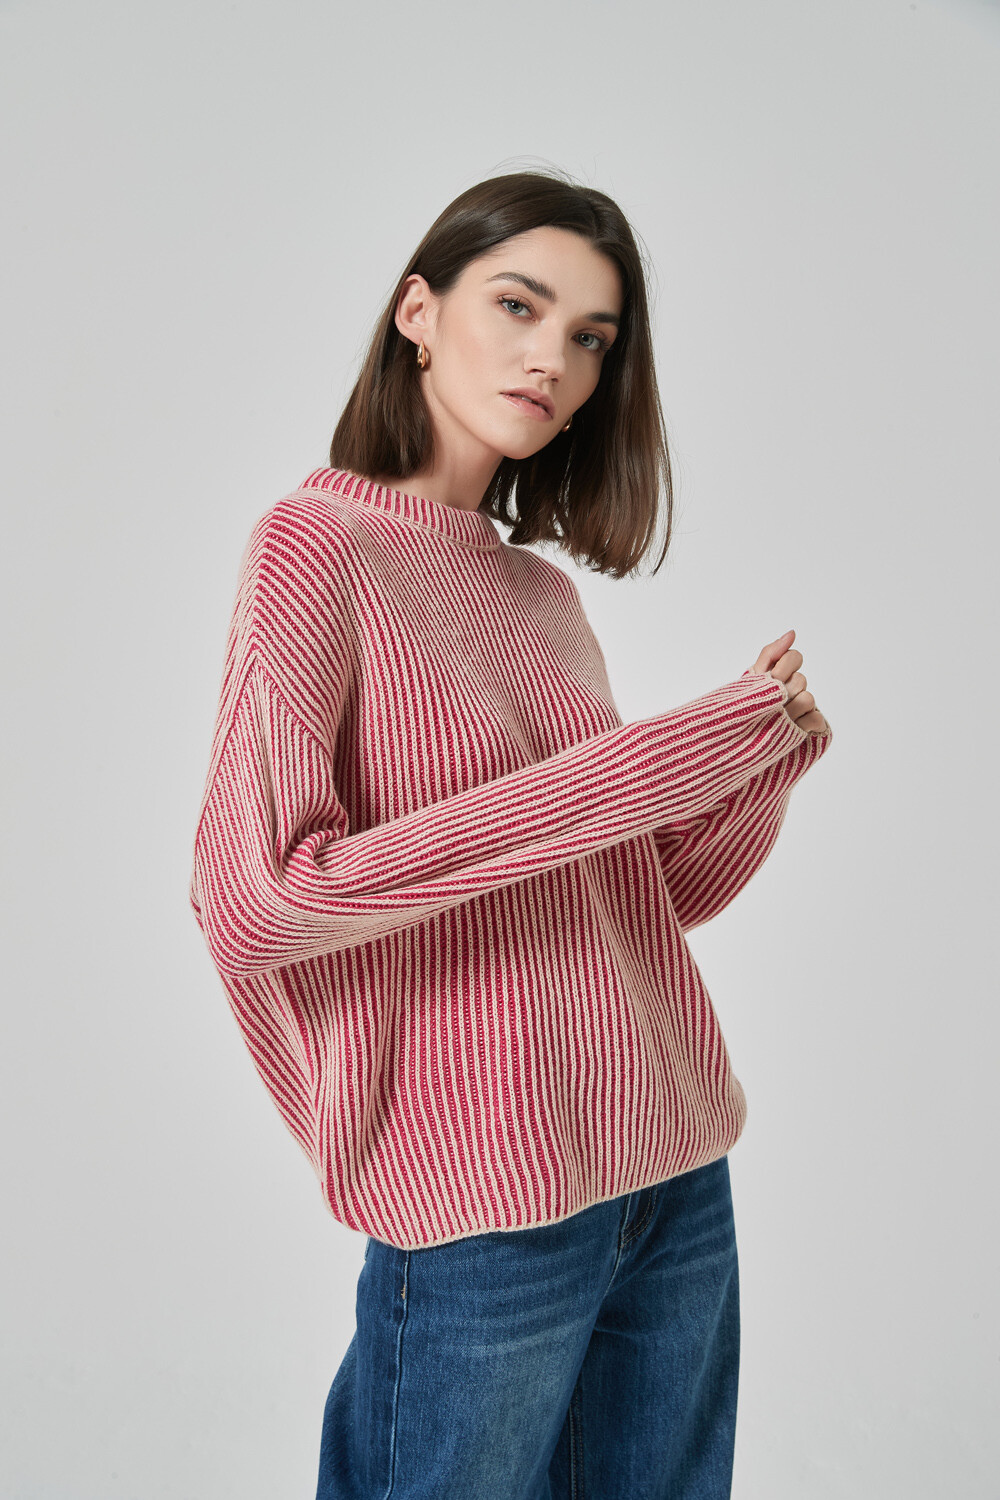 Sweater Jashore Estampado 1